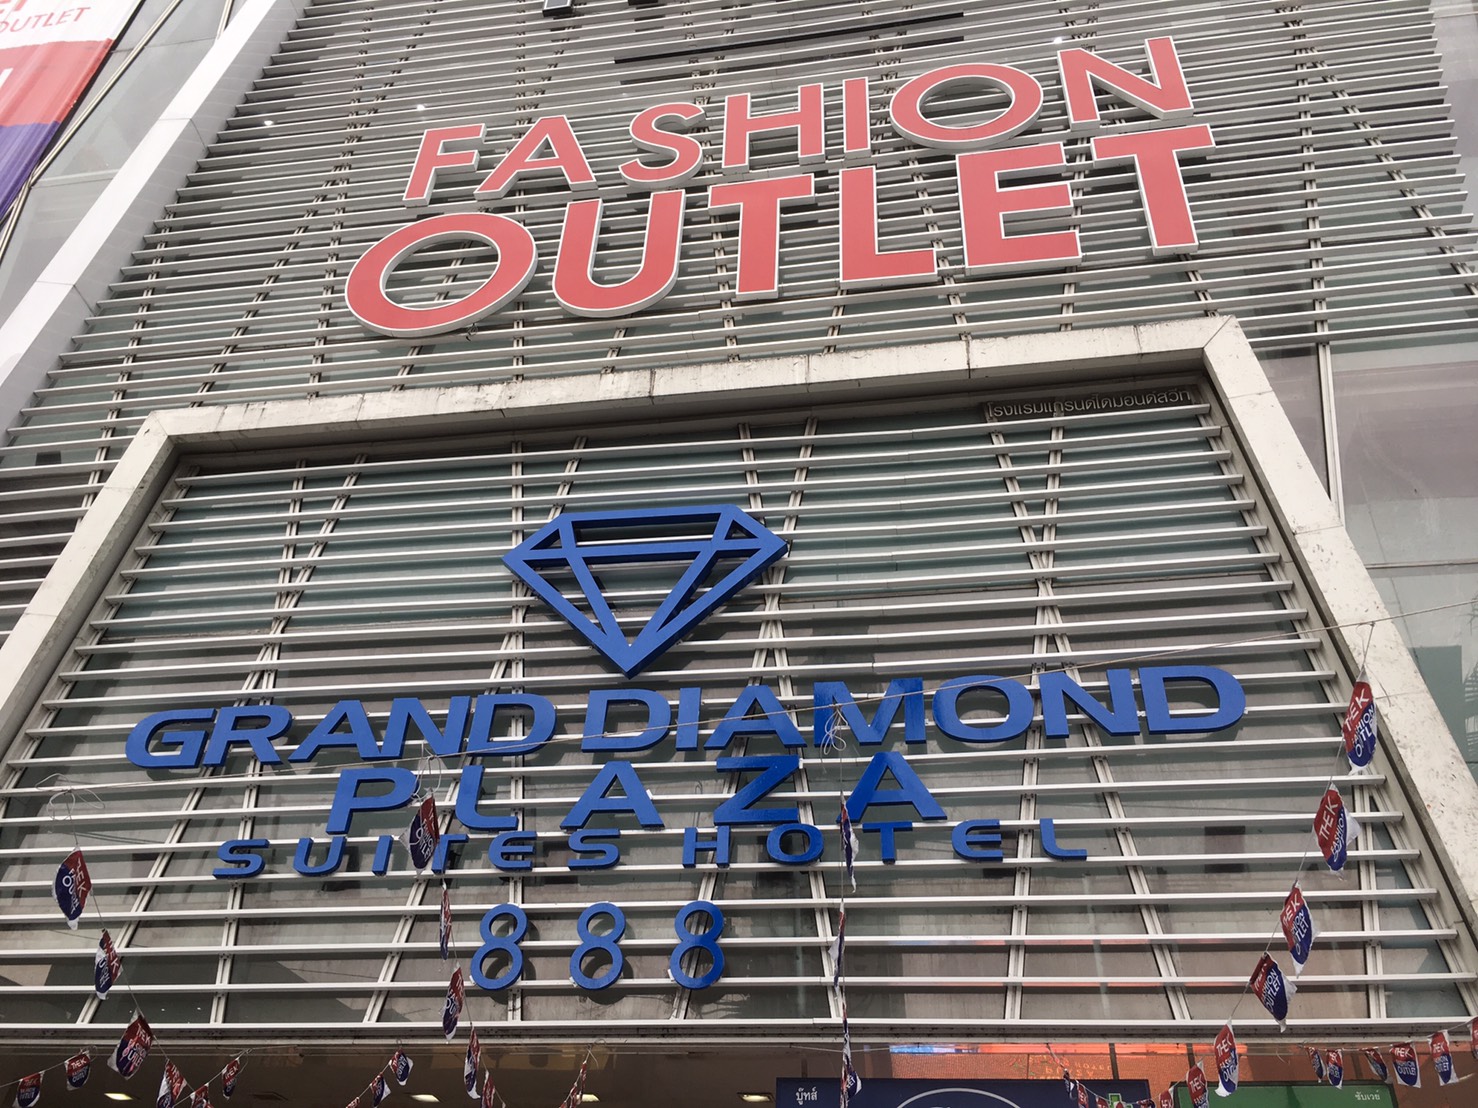 アウトレット,ショッピング,買い物,タイ,バンコク,ブランド,The K Fashion Outlet,有名